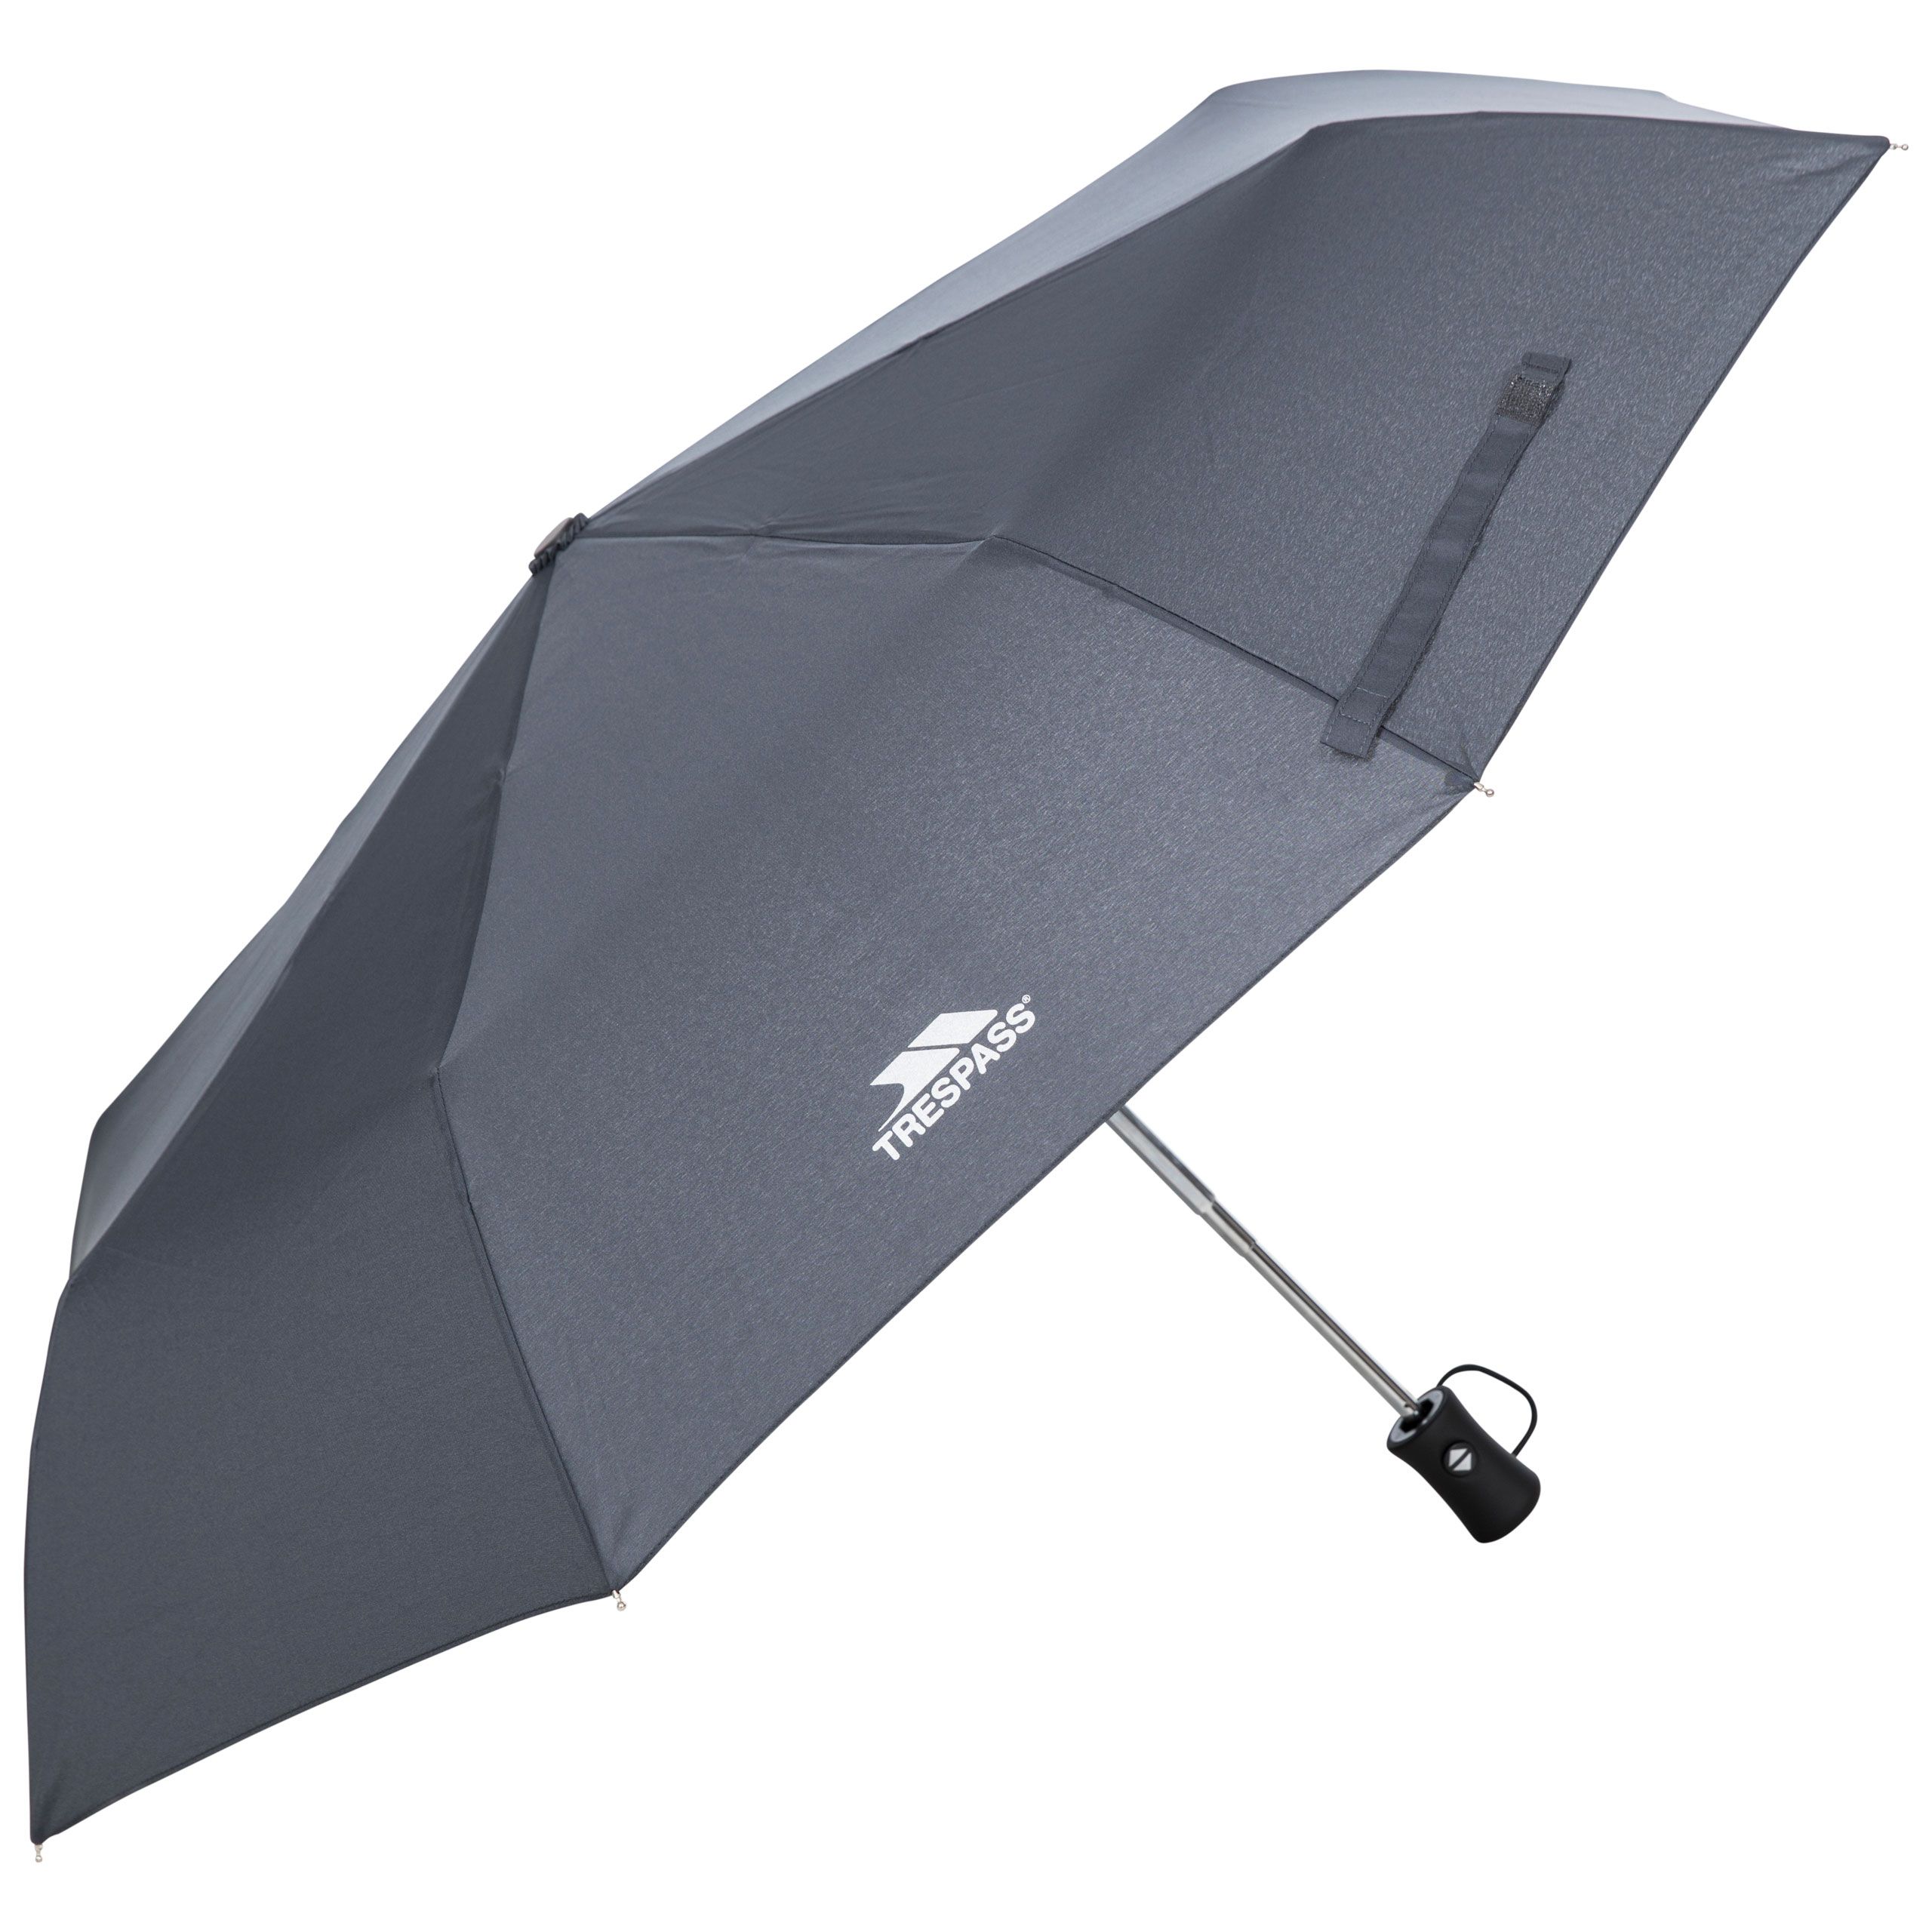 Resistant Compact Umbrella